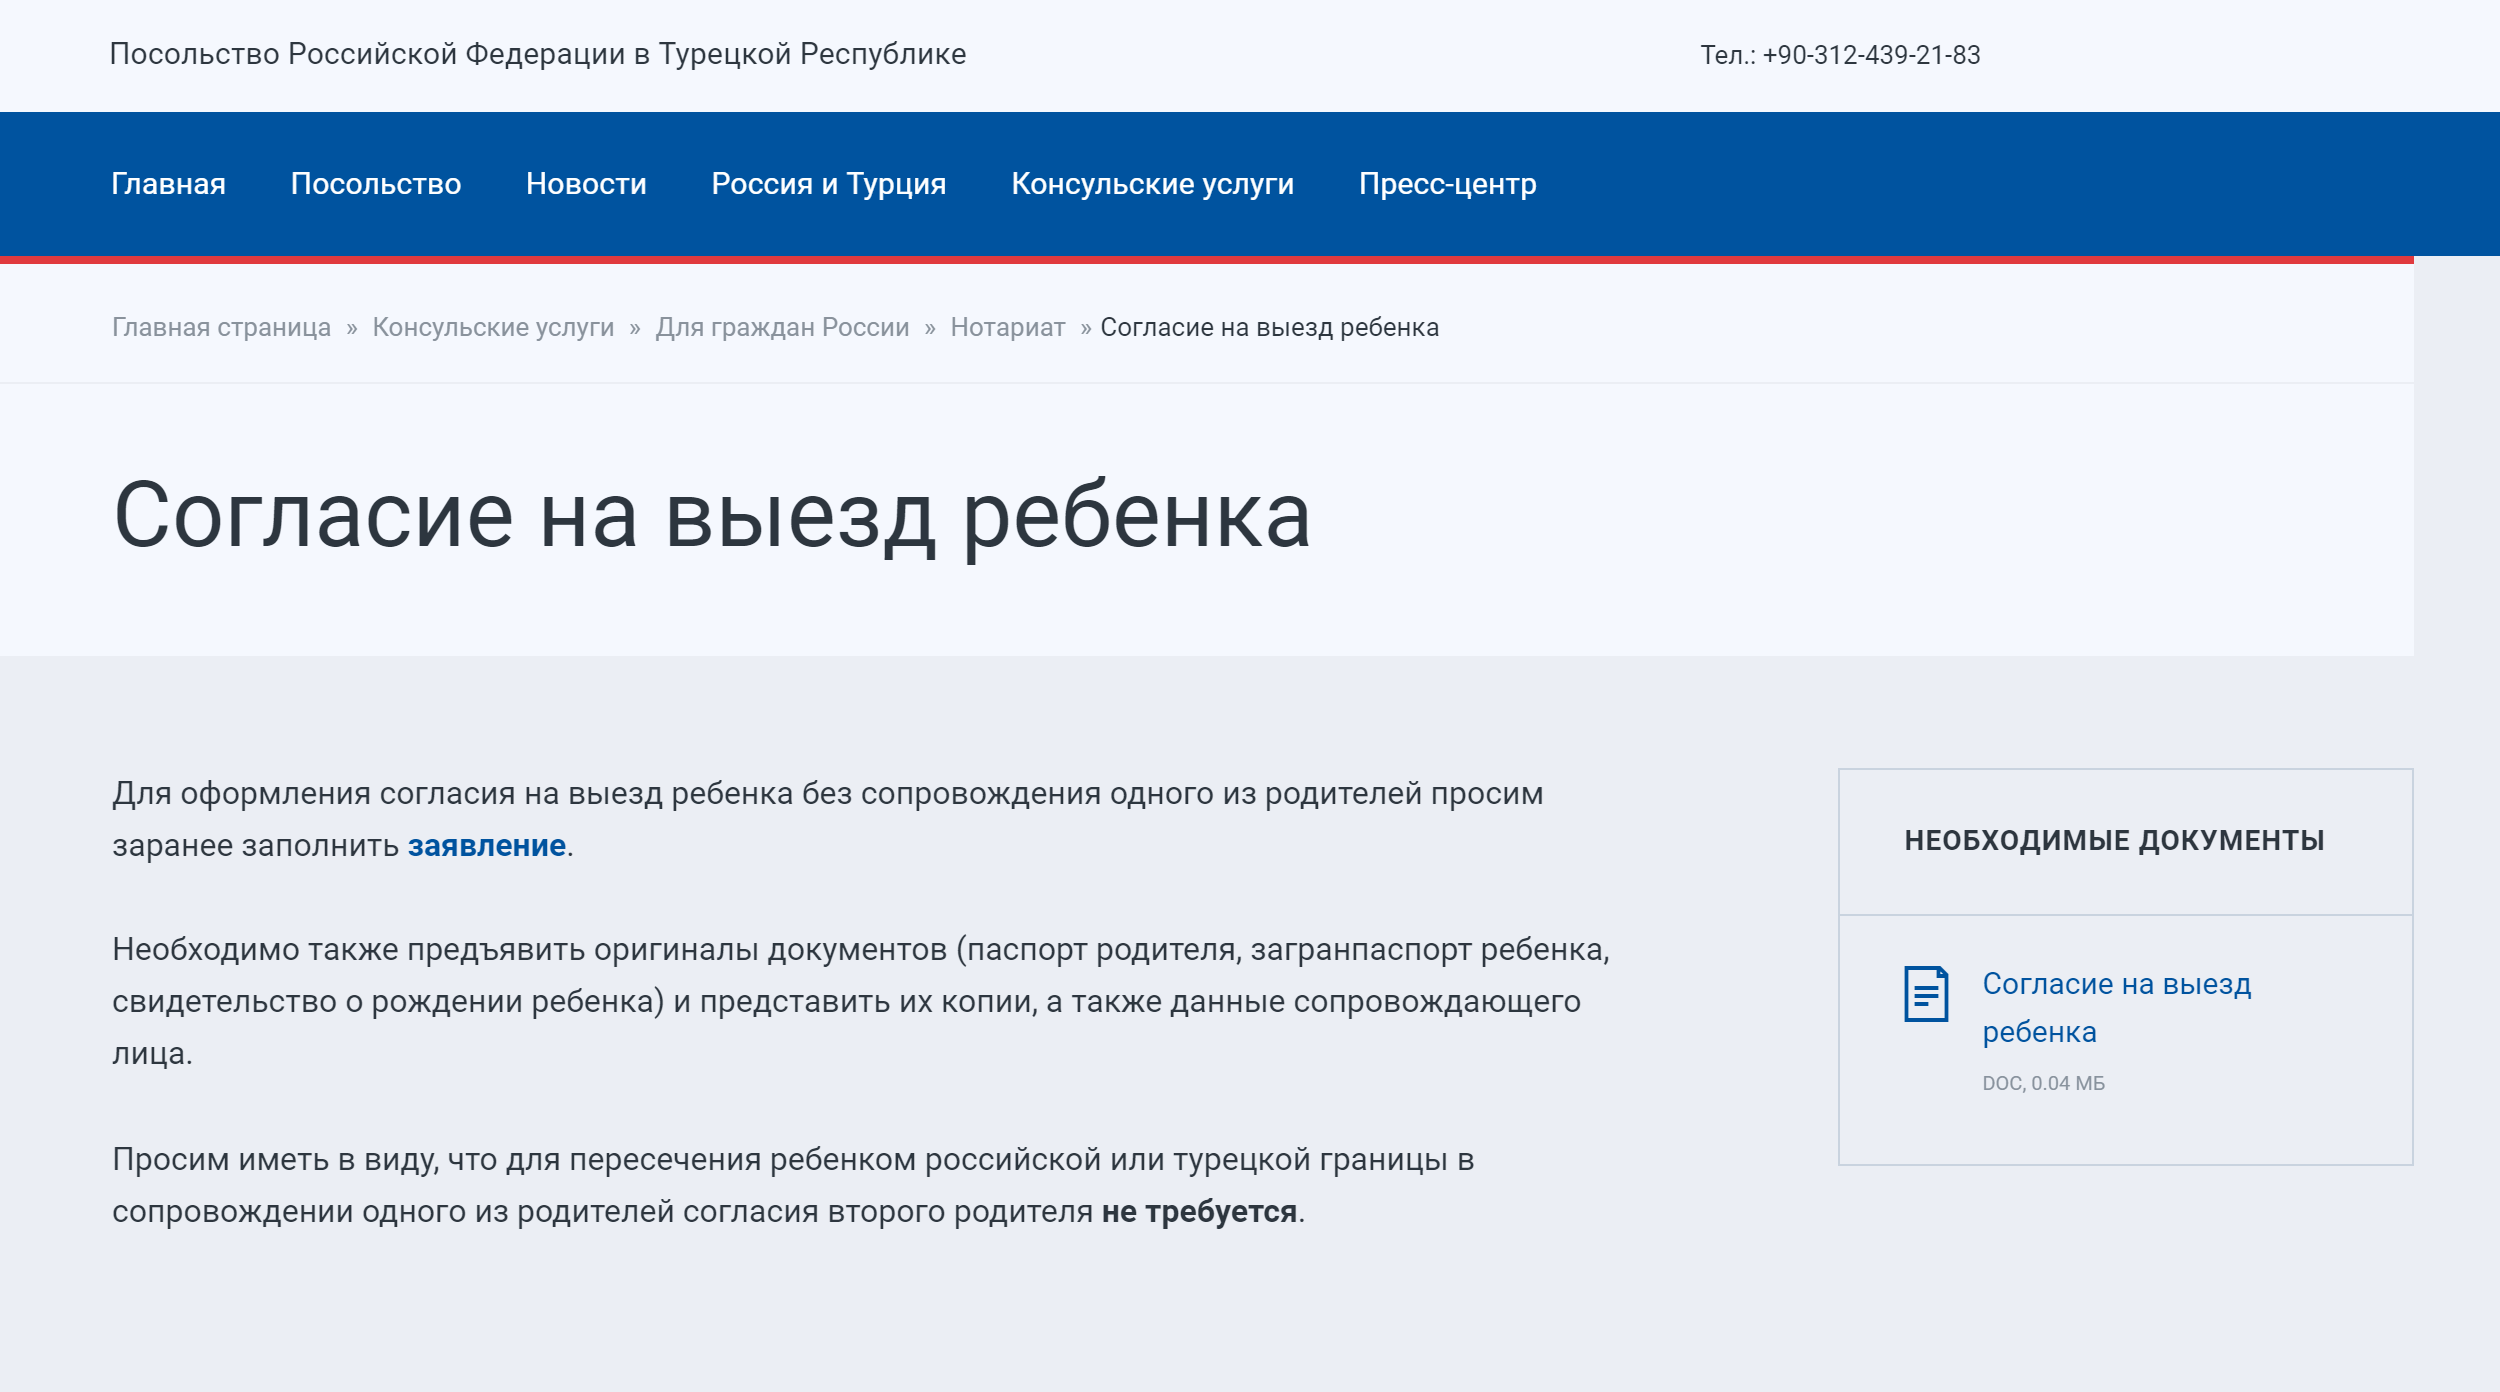 На сайте посольства России в Турции есть подробная инструкция по оформлению согласия на выезд